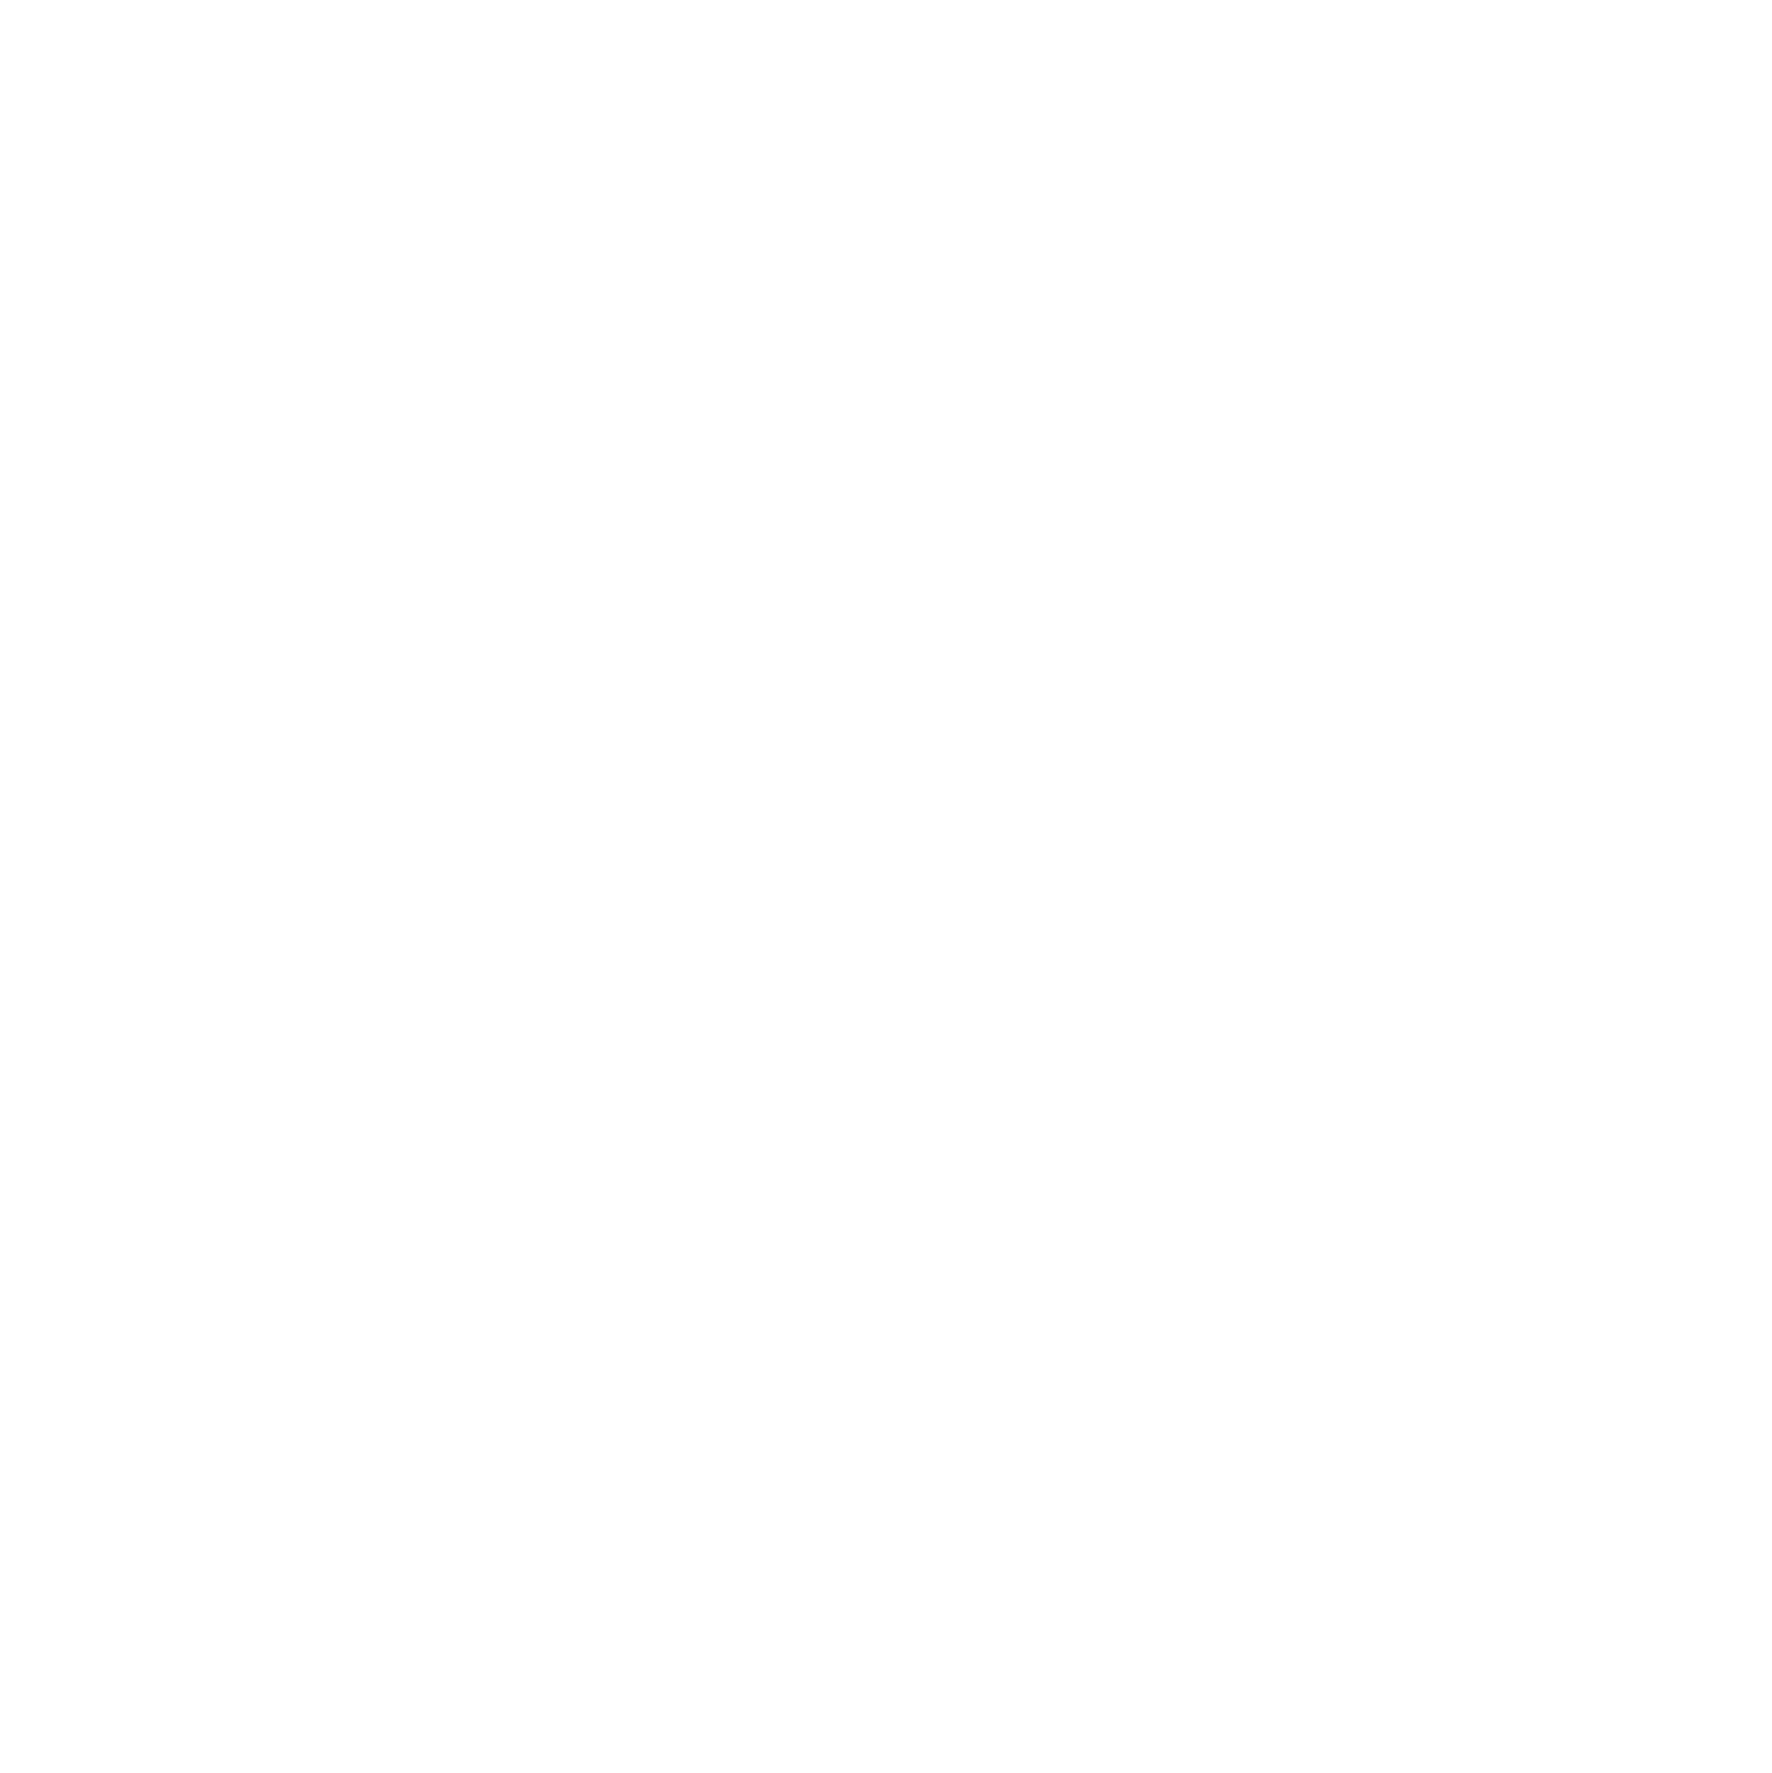 BIMI BEAR